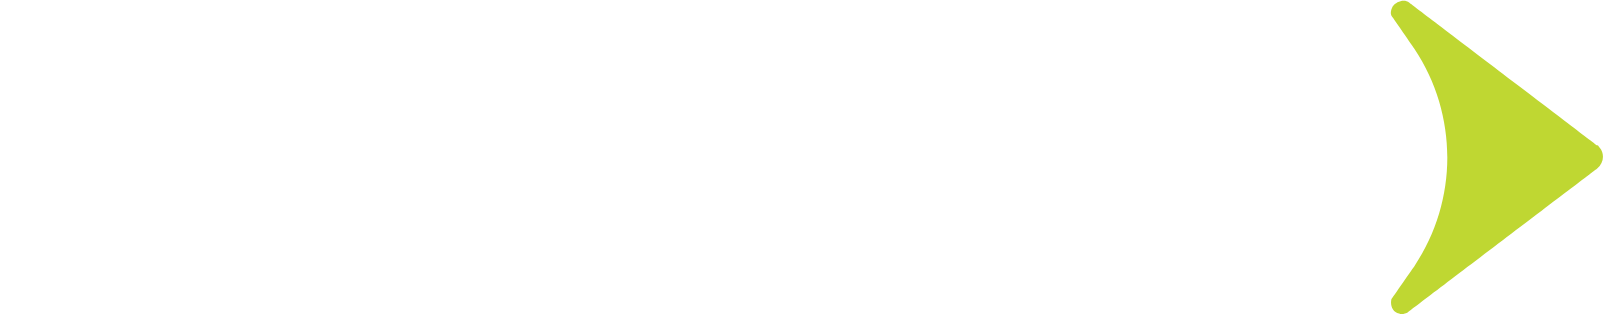 Globant logo large for dark backgrounds (transparent PNG)